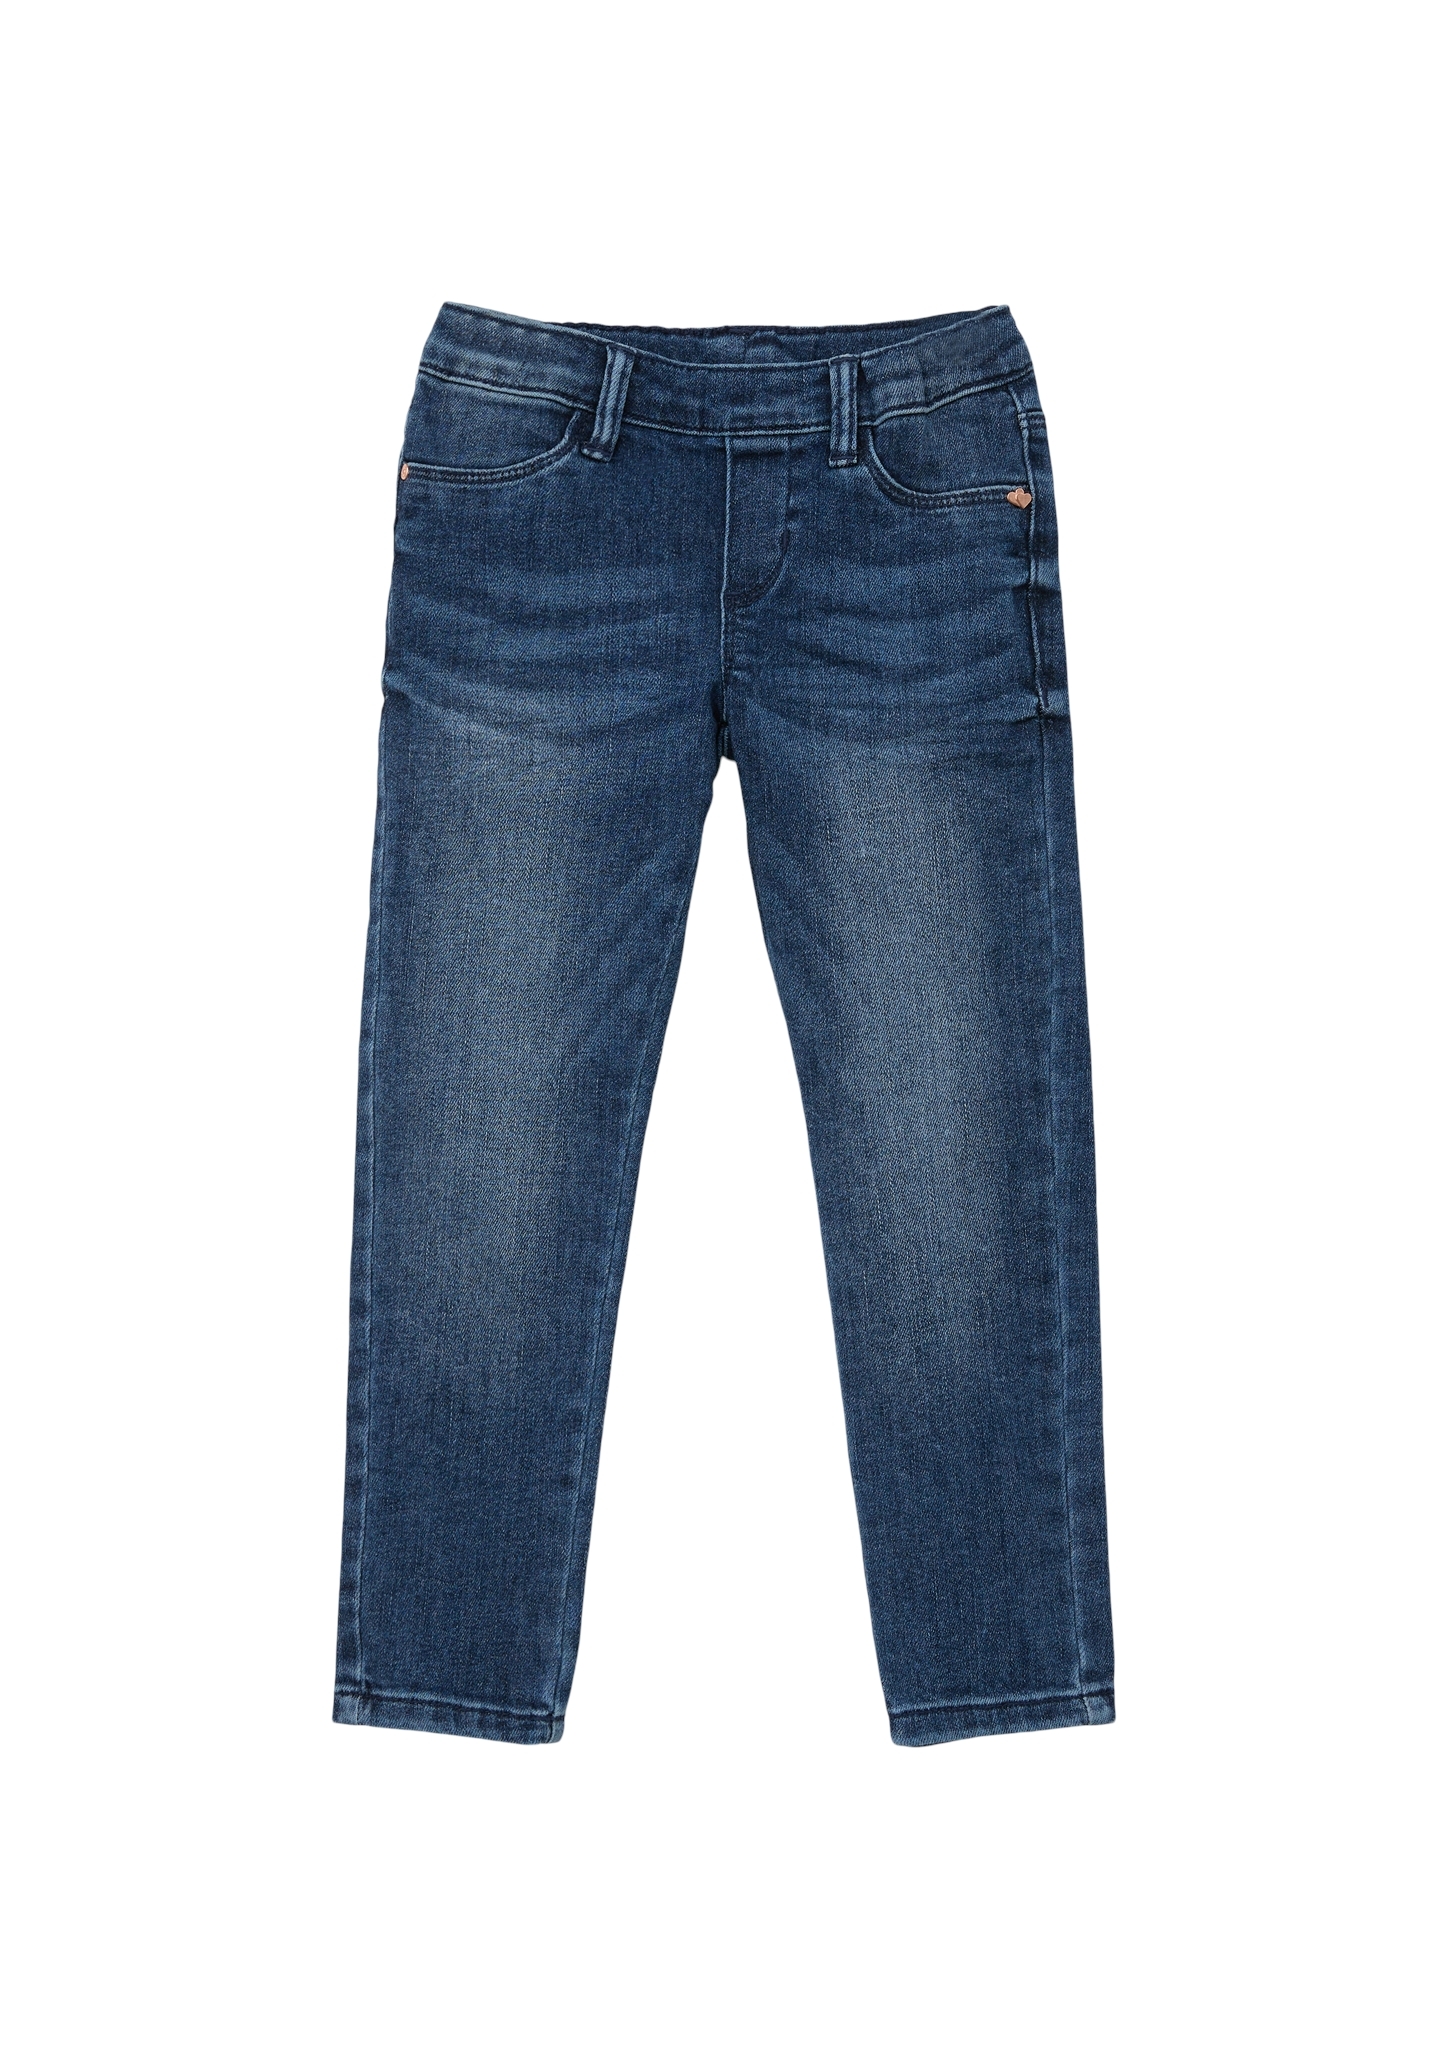 S.OLIVER Jeans-Hose 10724729 kaufen | WÖHRL